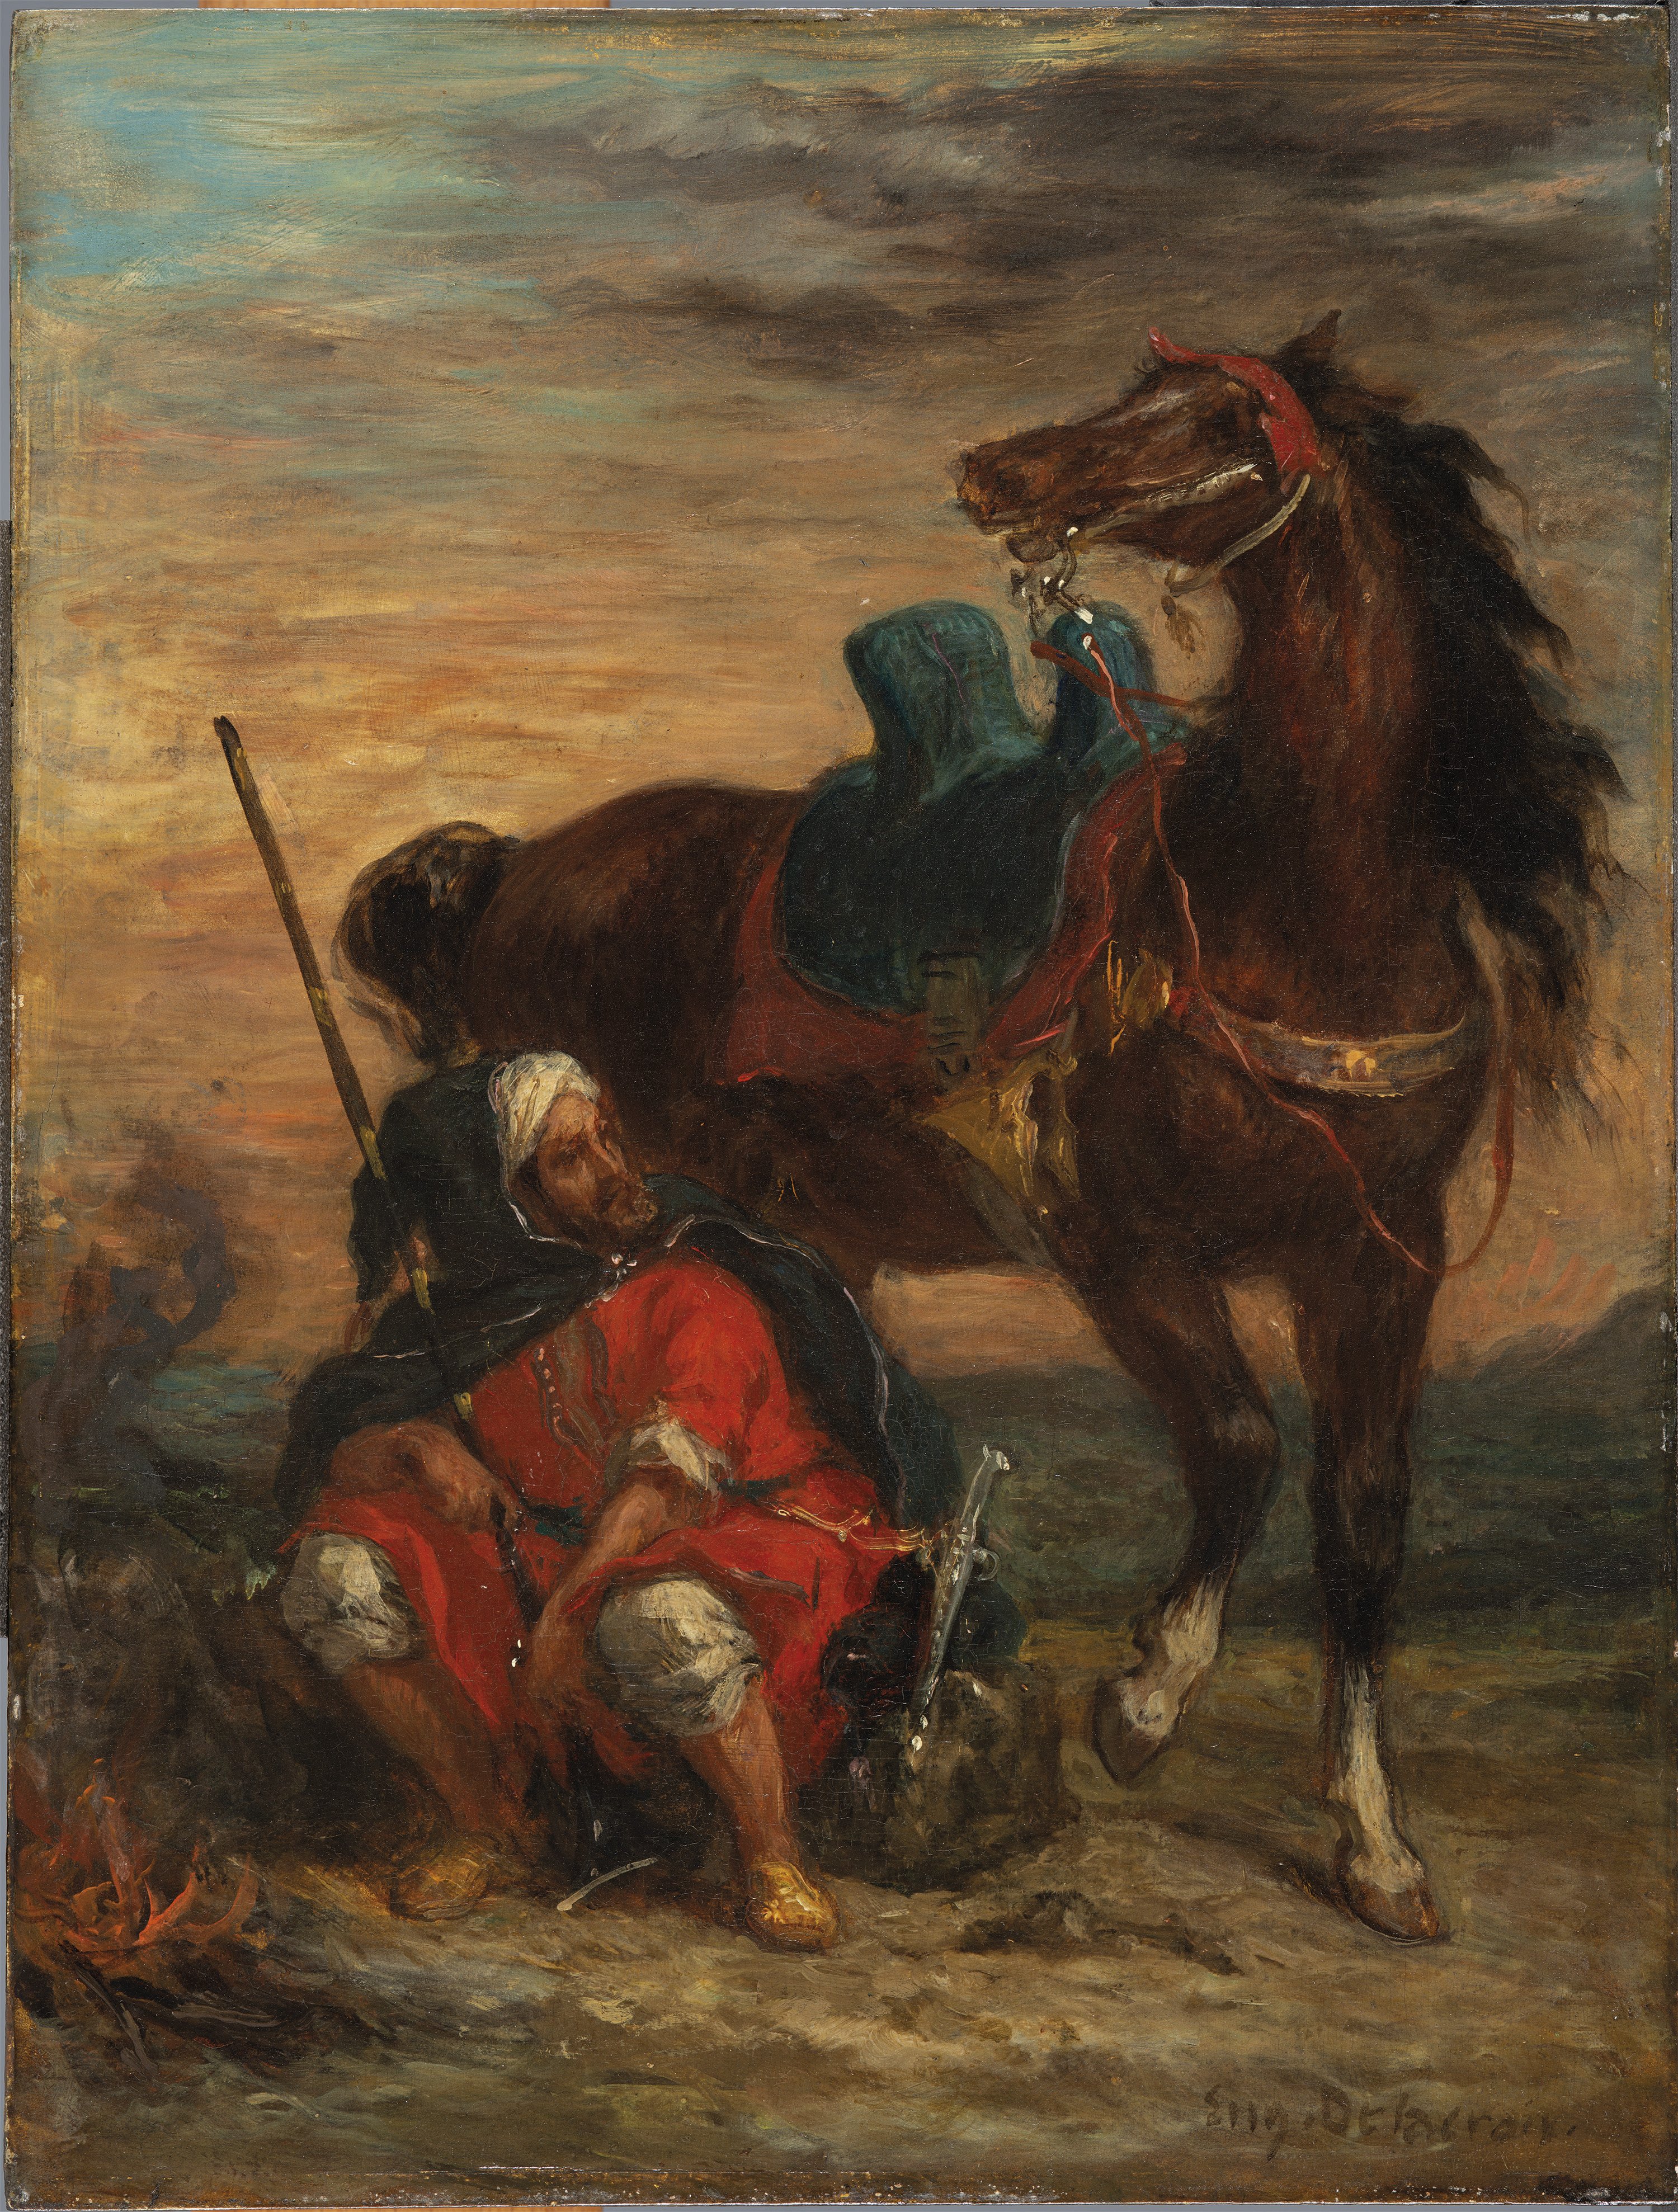 Arab Rider. Eugène Delacroix